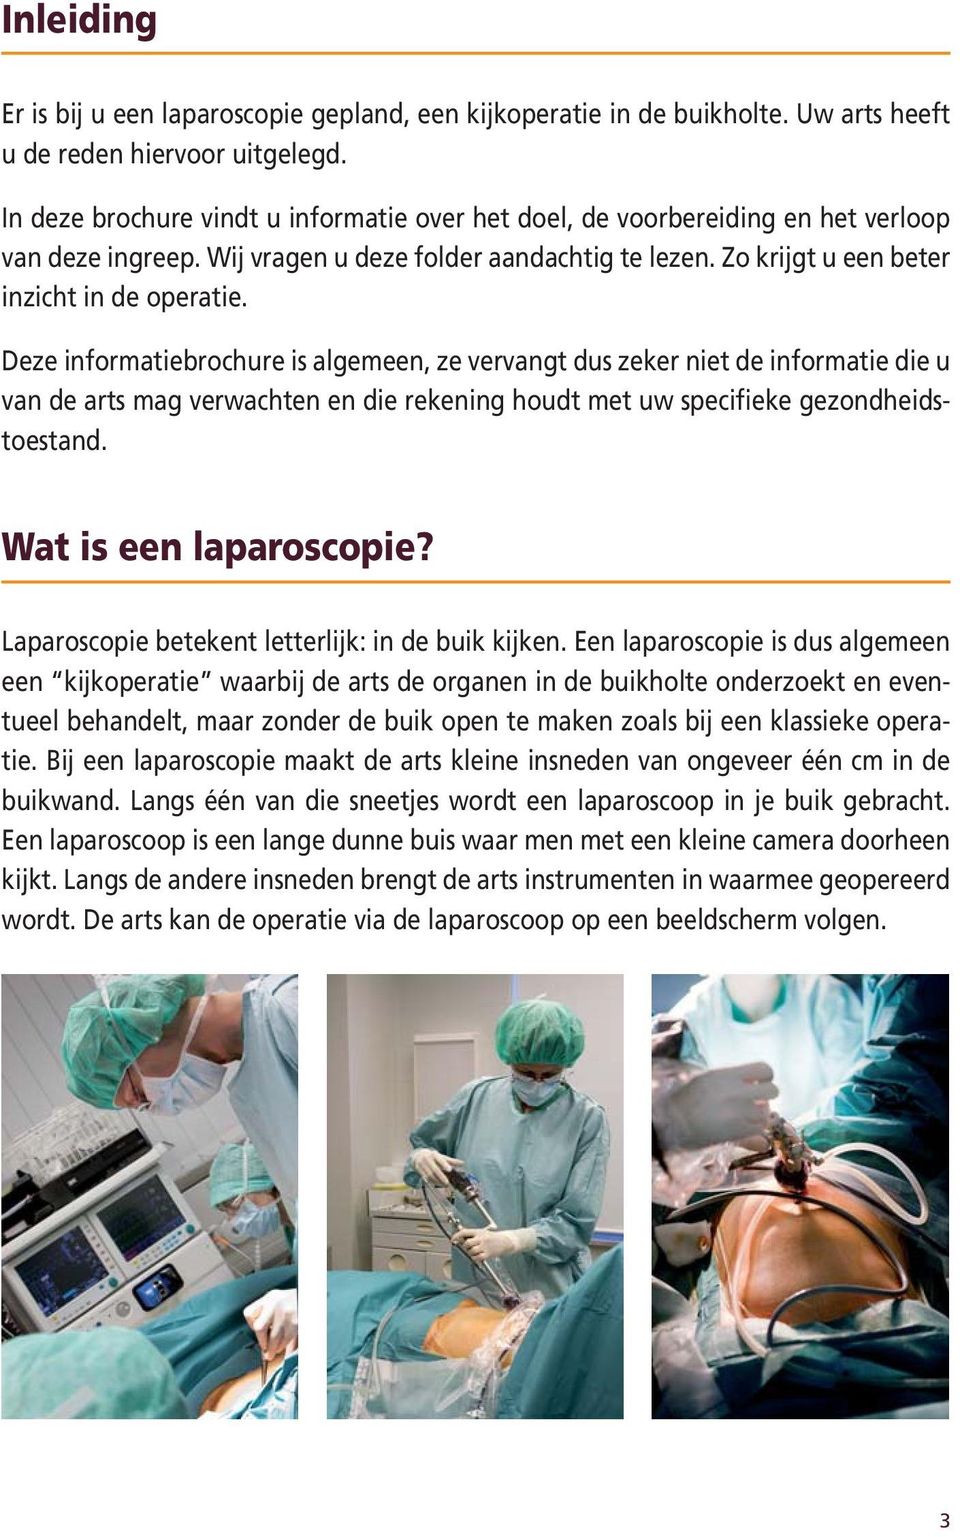 Deze informatiebrochure is algemeen, ze vervangt dus zeker niet de informatie die u van de arts mag verwachten en die rekening houdt met uw specifieke gezondheidstoestand. Wat is een laparoscopie?